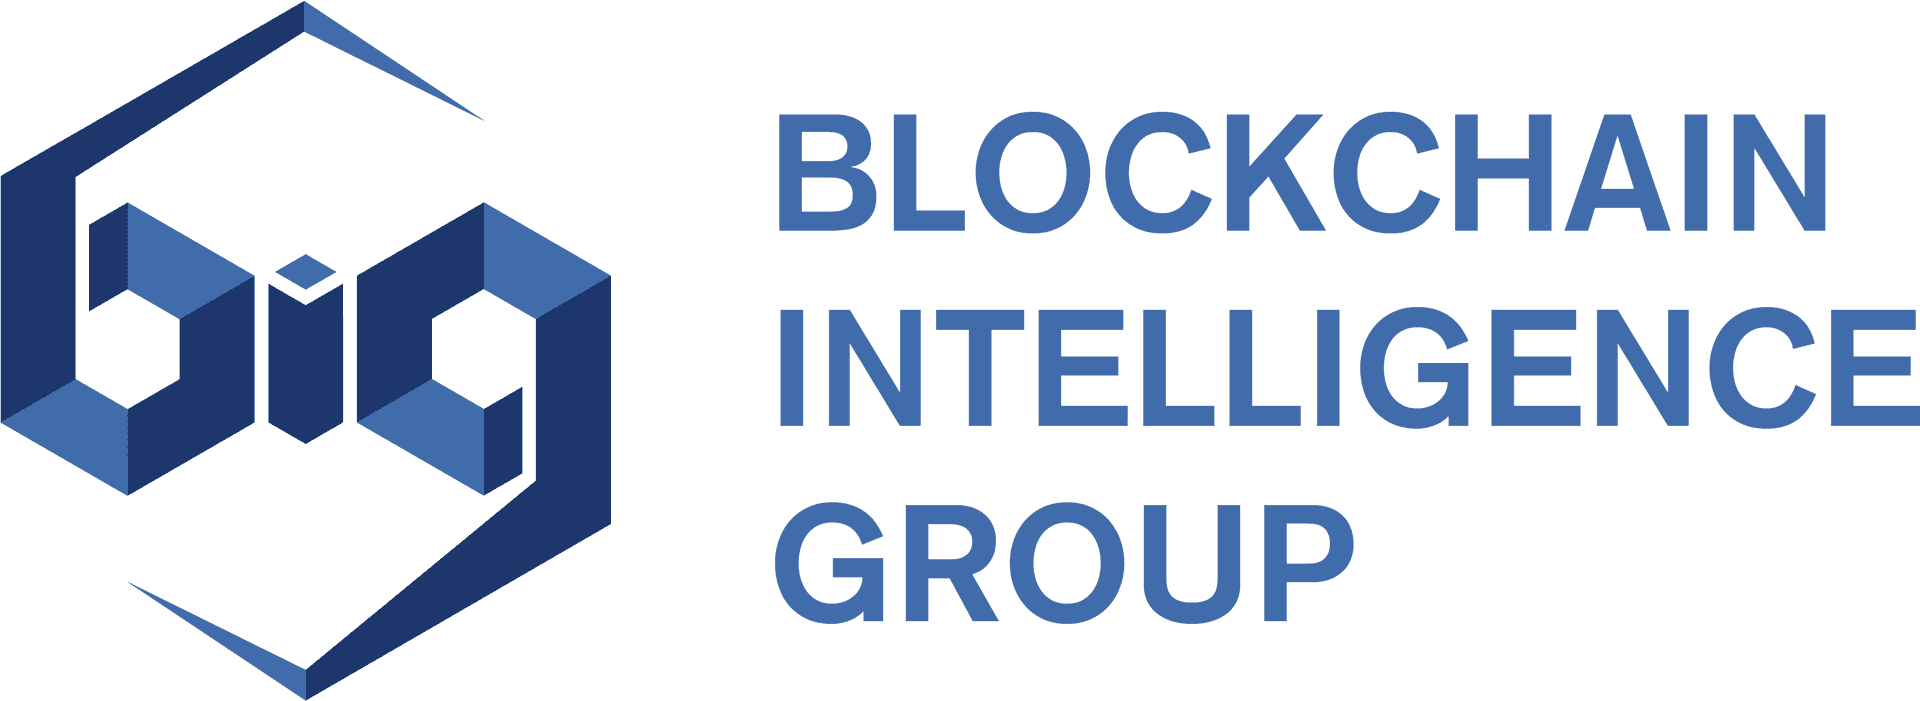 Blockchain Intelligence Group Logo PNG image